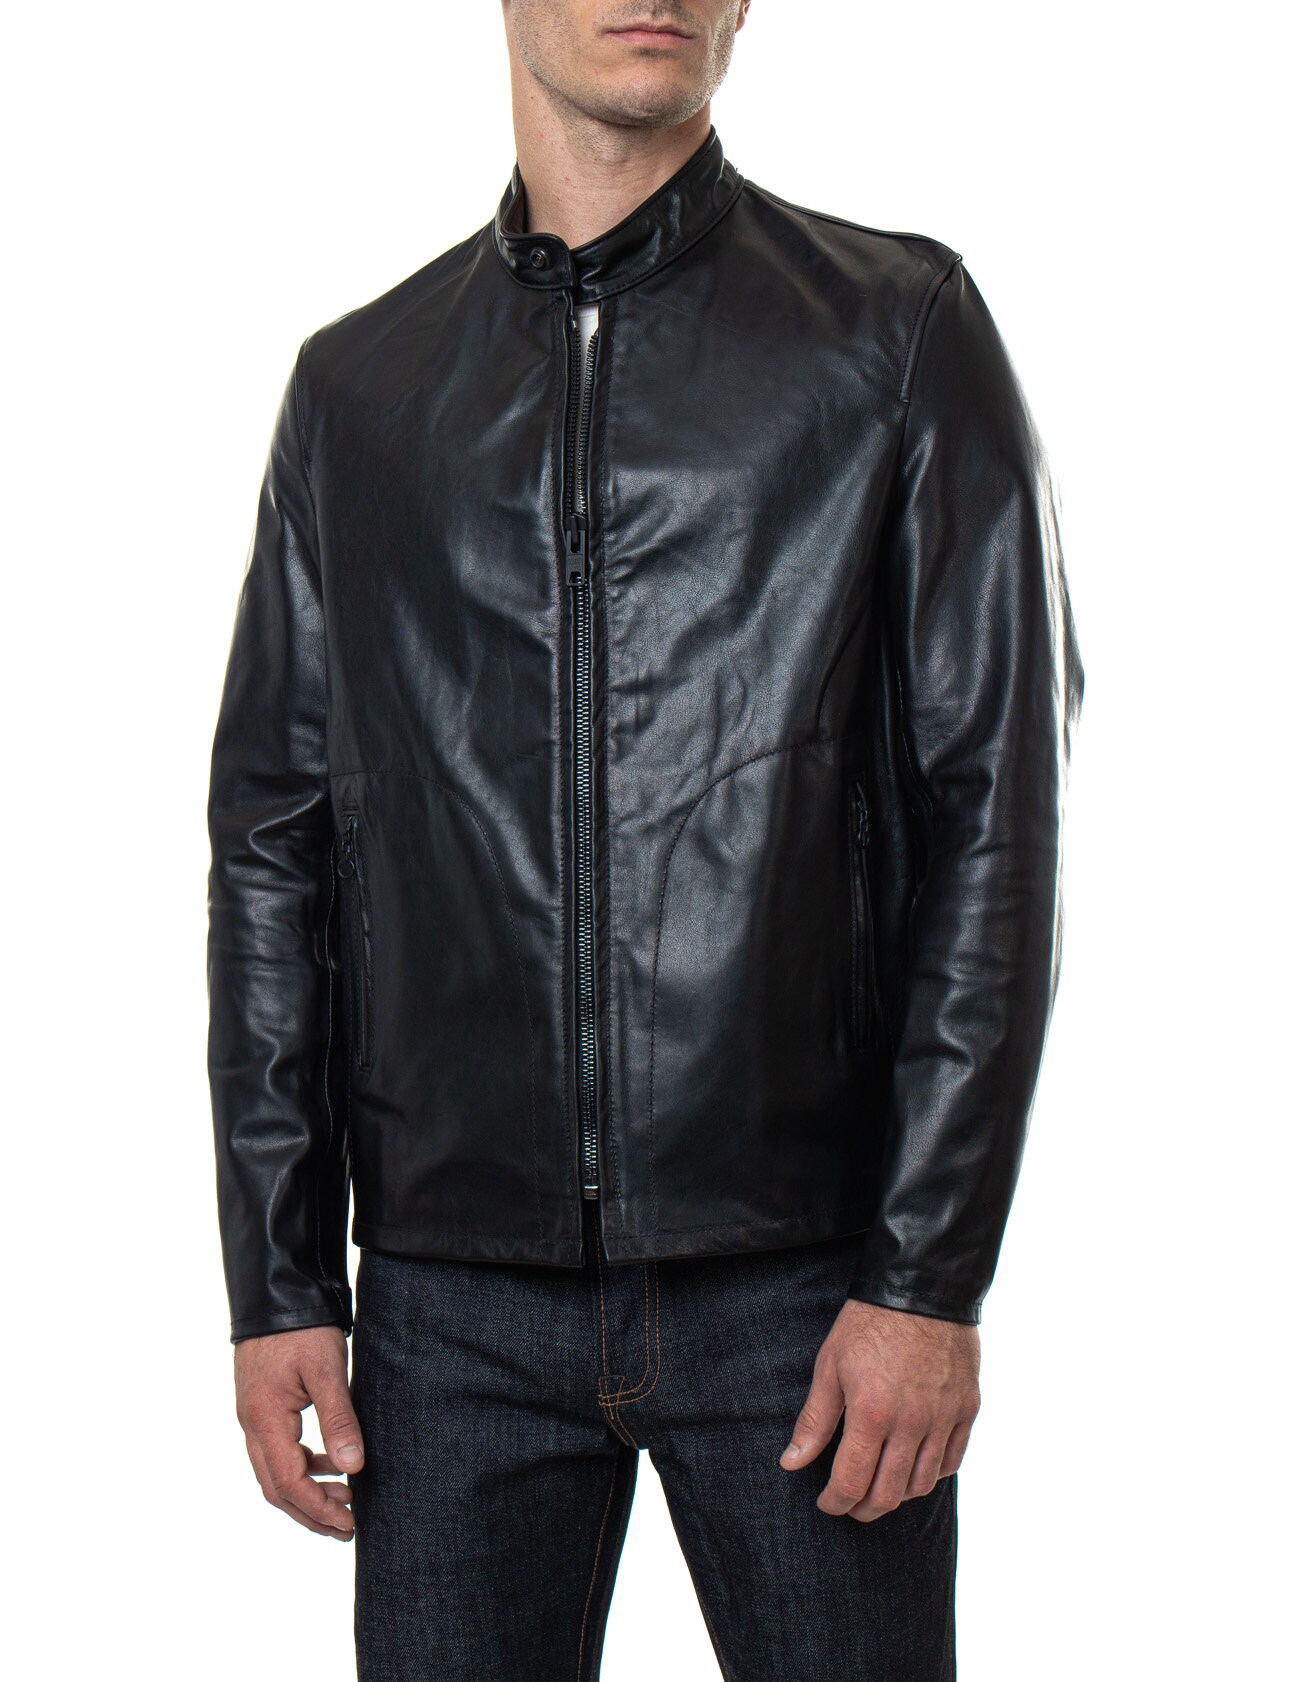 Men's Journey Men's Leather Jacket Black & Brown - Etsy